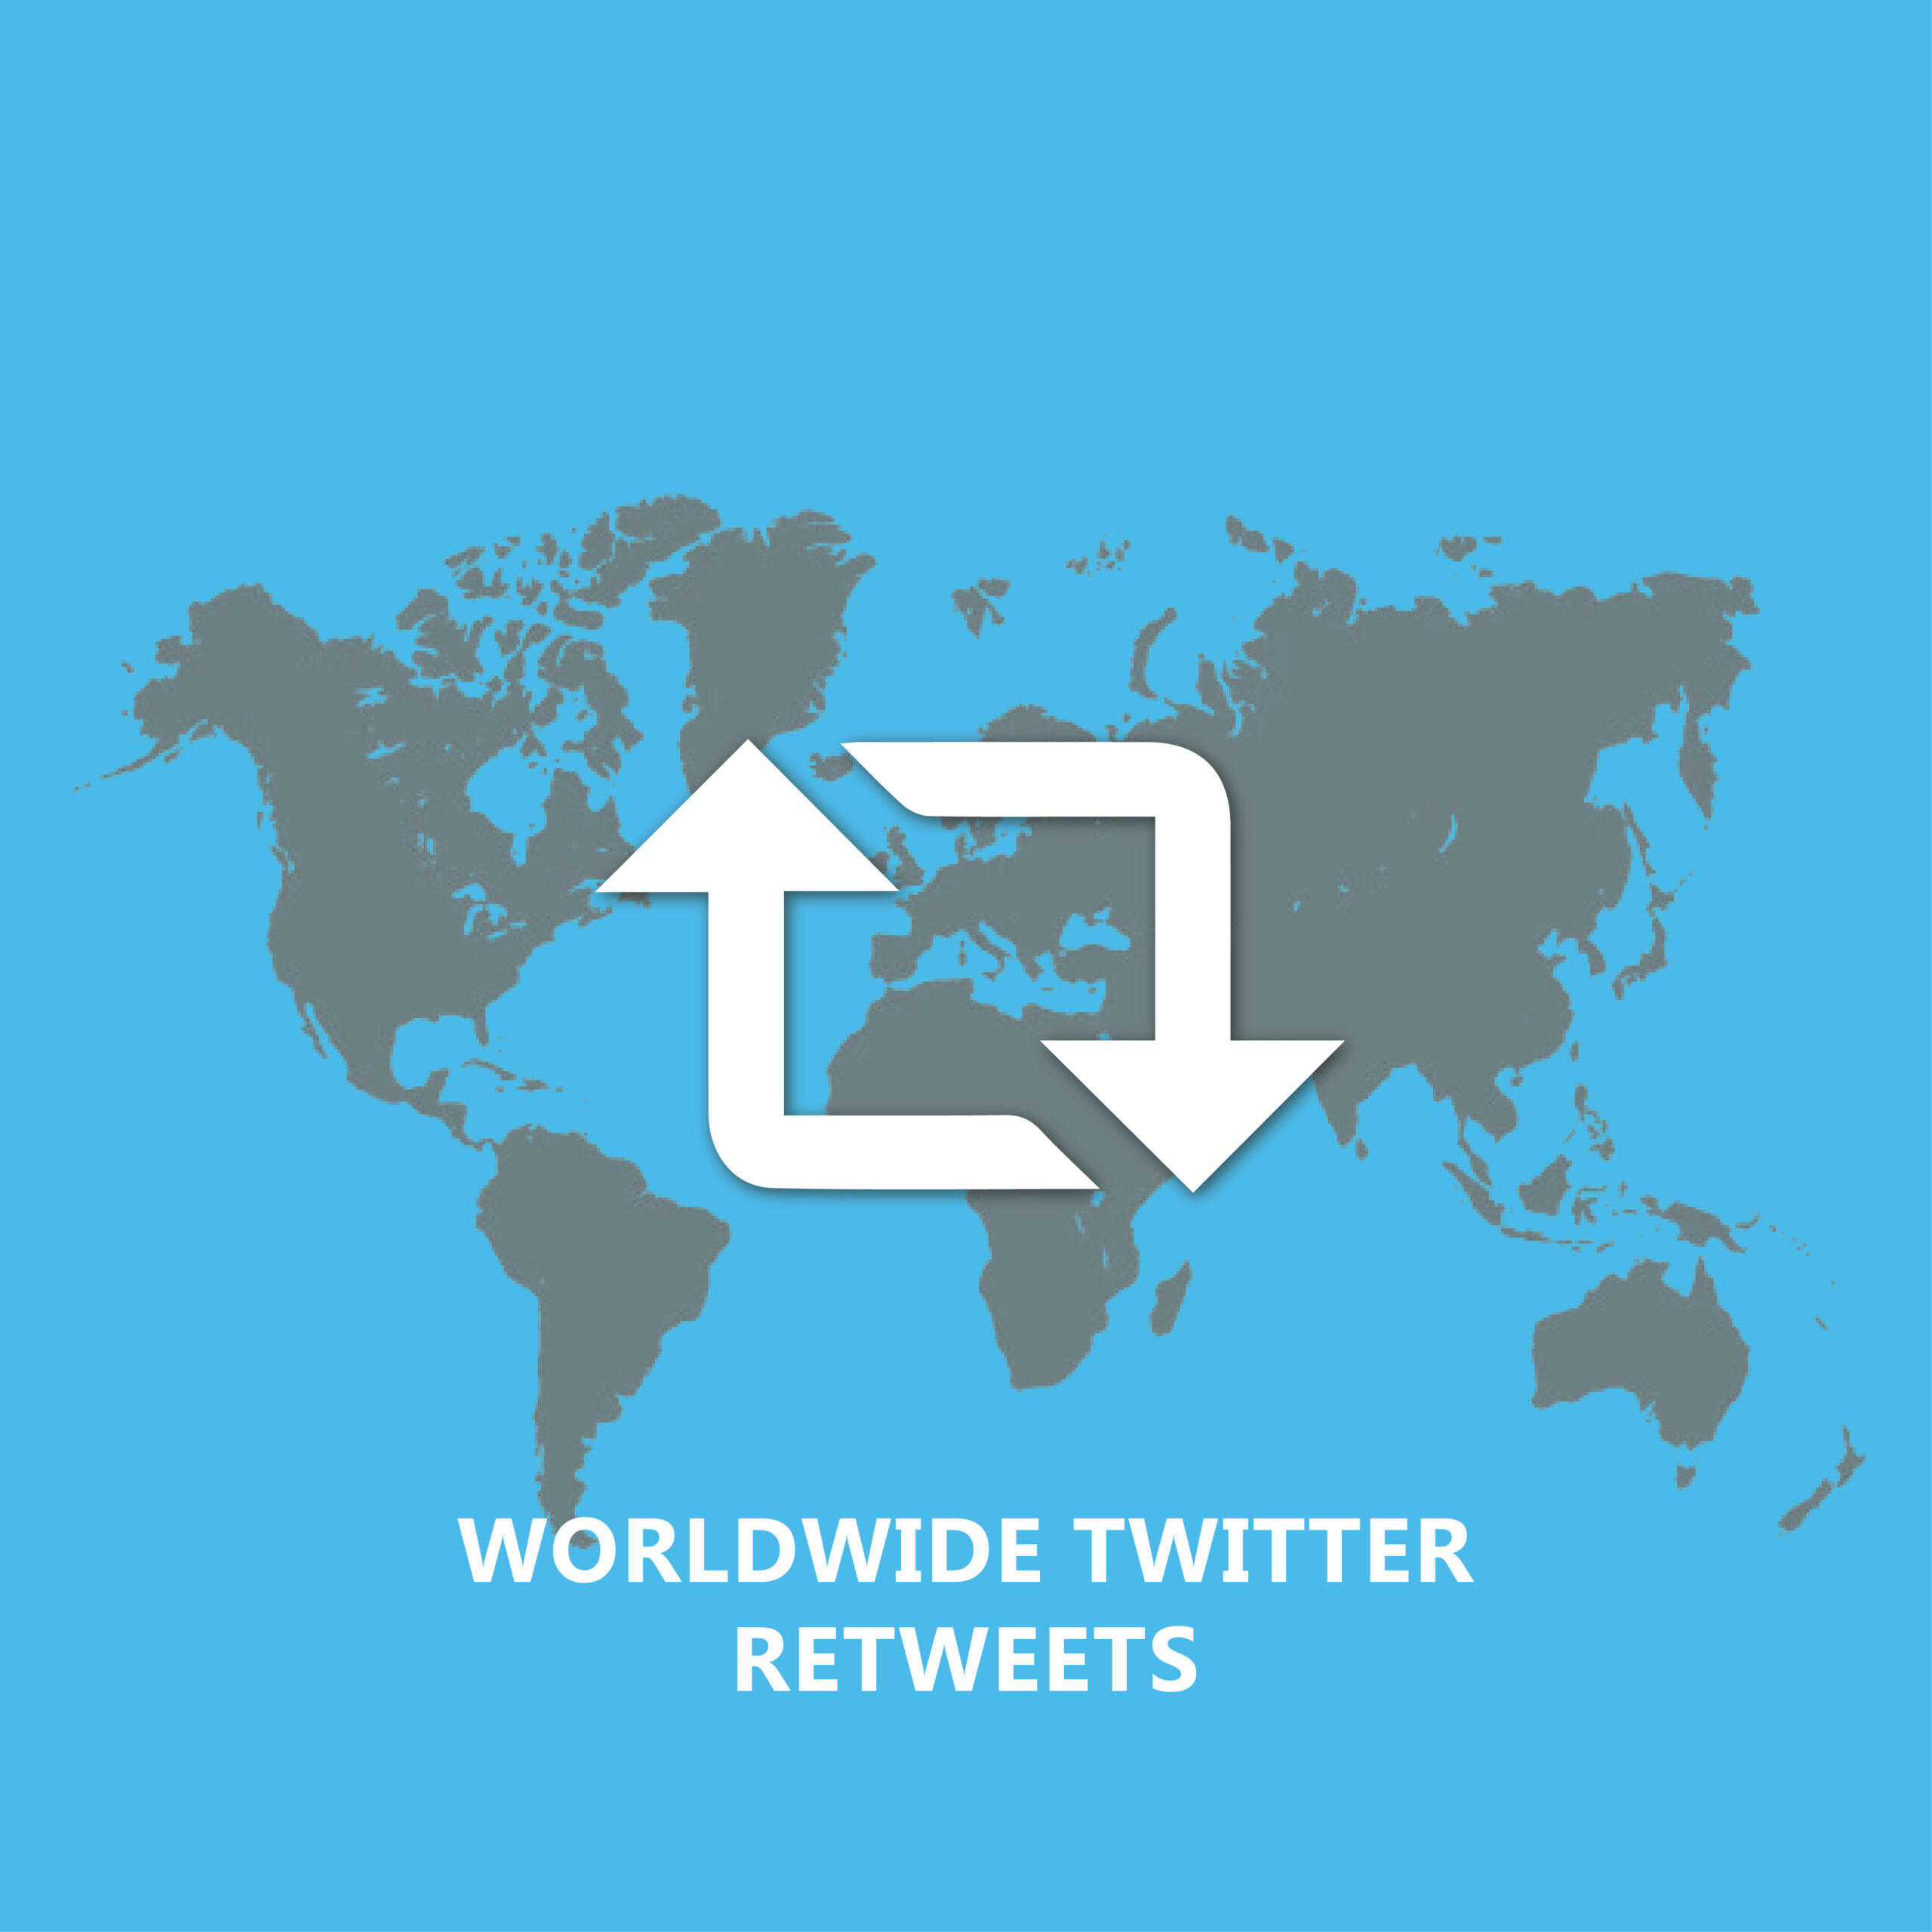 Worldwide Twitter Retweets